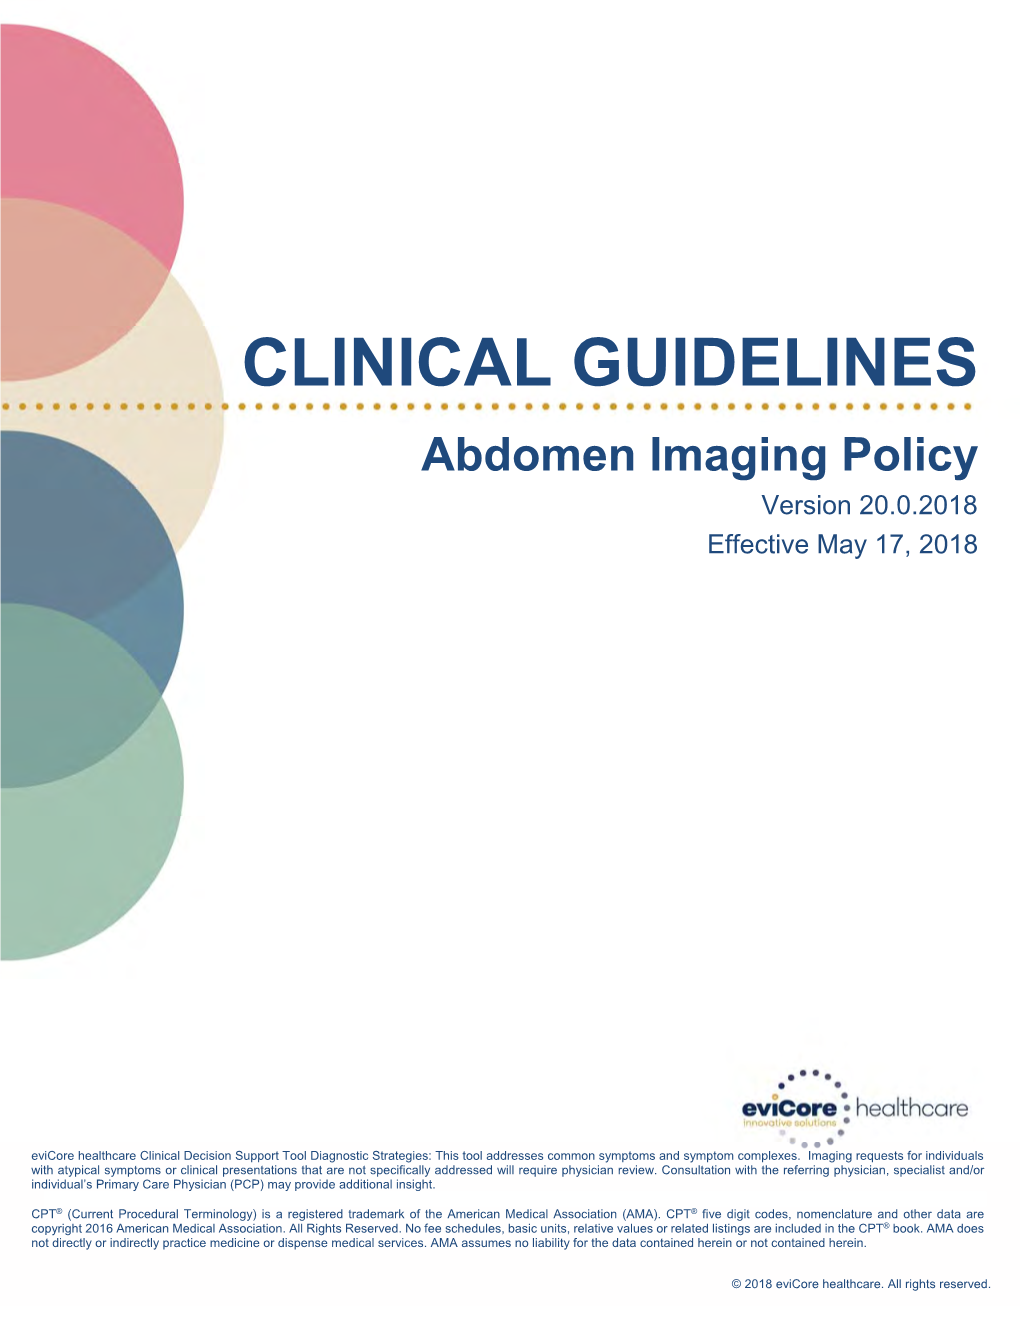 Abdomen Imaging Guidelines Effective 05/22/2017